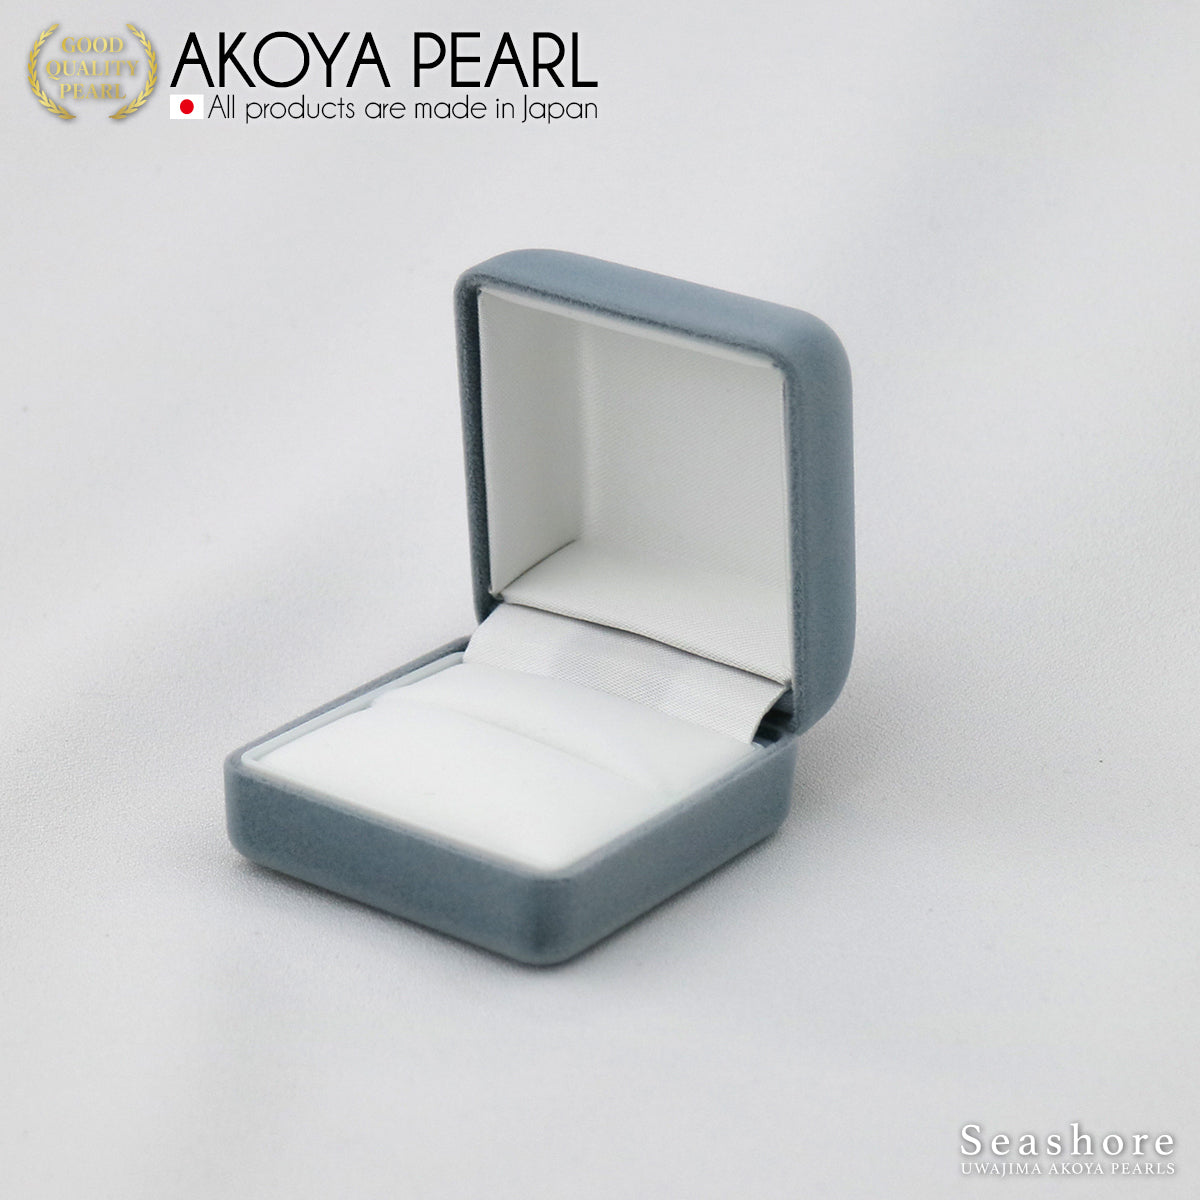 戒指盒 戒指盒 紧凑型丝绒织物珍珠盒 灰色 (2.0.745.1557)